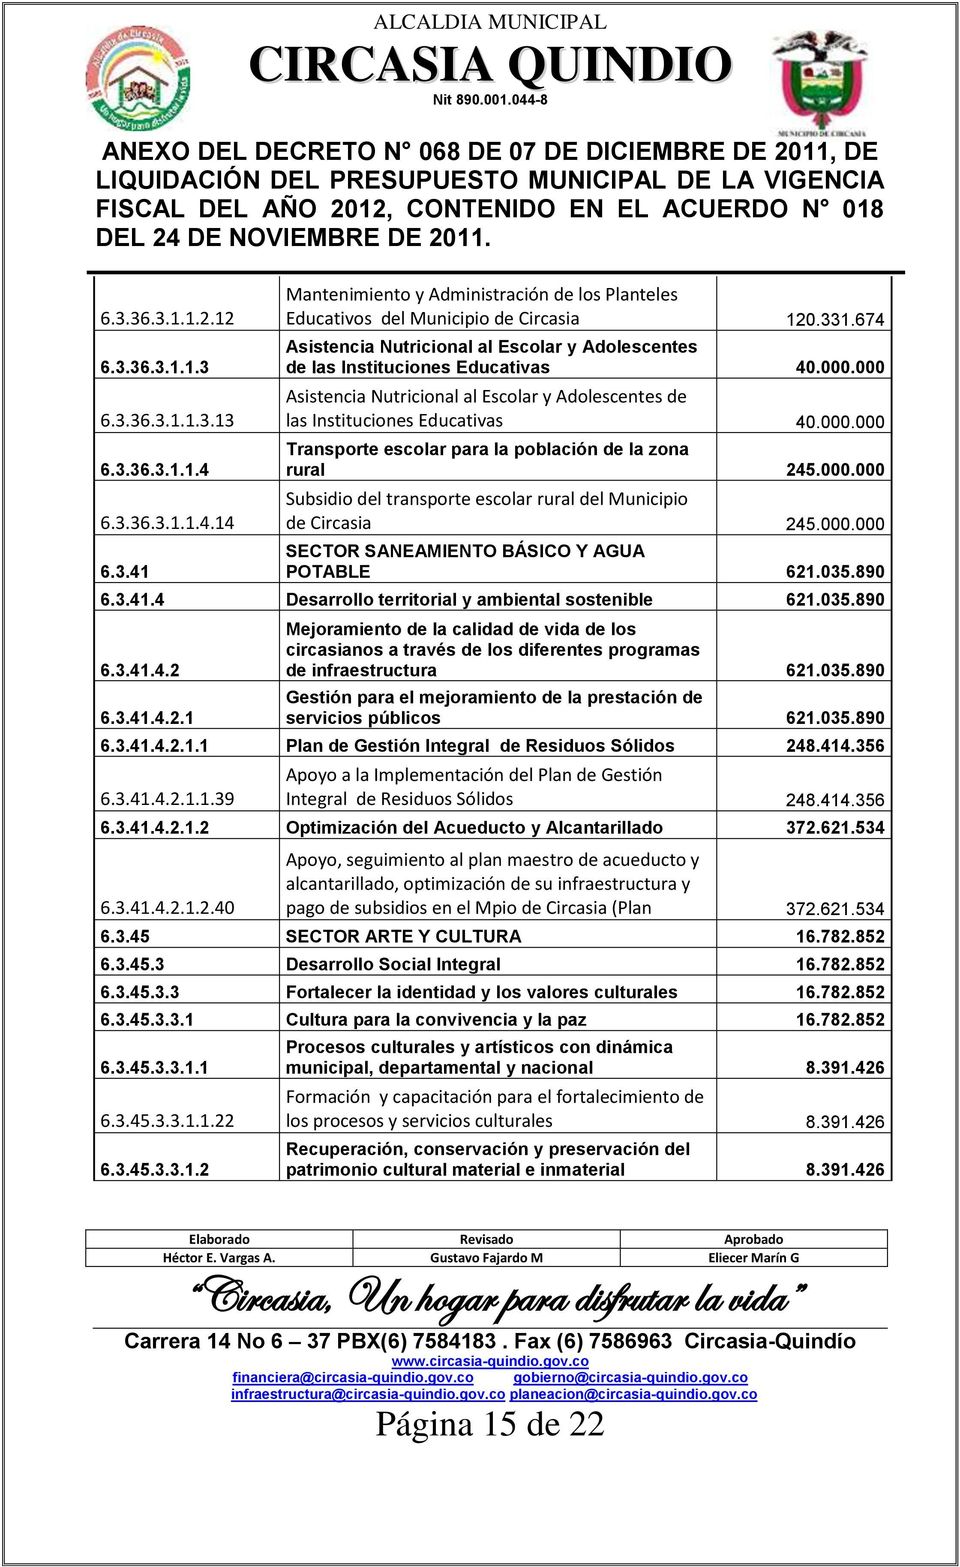 000.000 Subsidio del transporte escolar rural del Municipio de Circasia 245.000.000 SECTOR SANEAMIENTO BÁSICO Y AGUA POTABLE 621.035.890 6.3.41.4 Desarrollo territorial y ambiental sostenible 621.035.890 6.3.41.4.2 6.